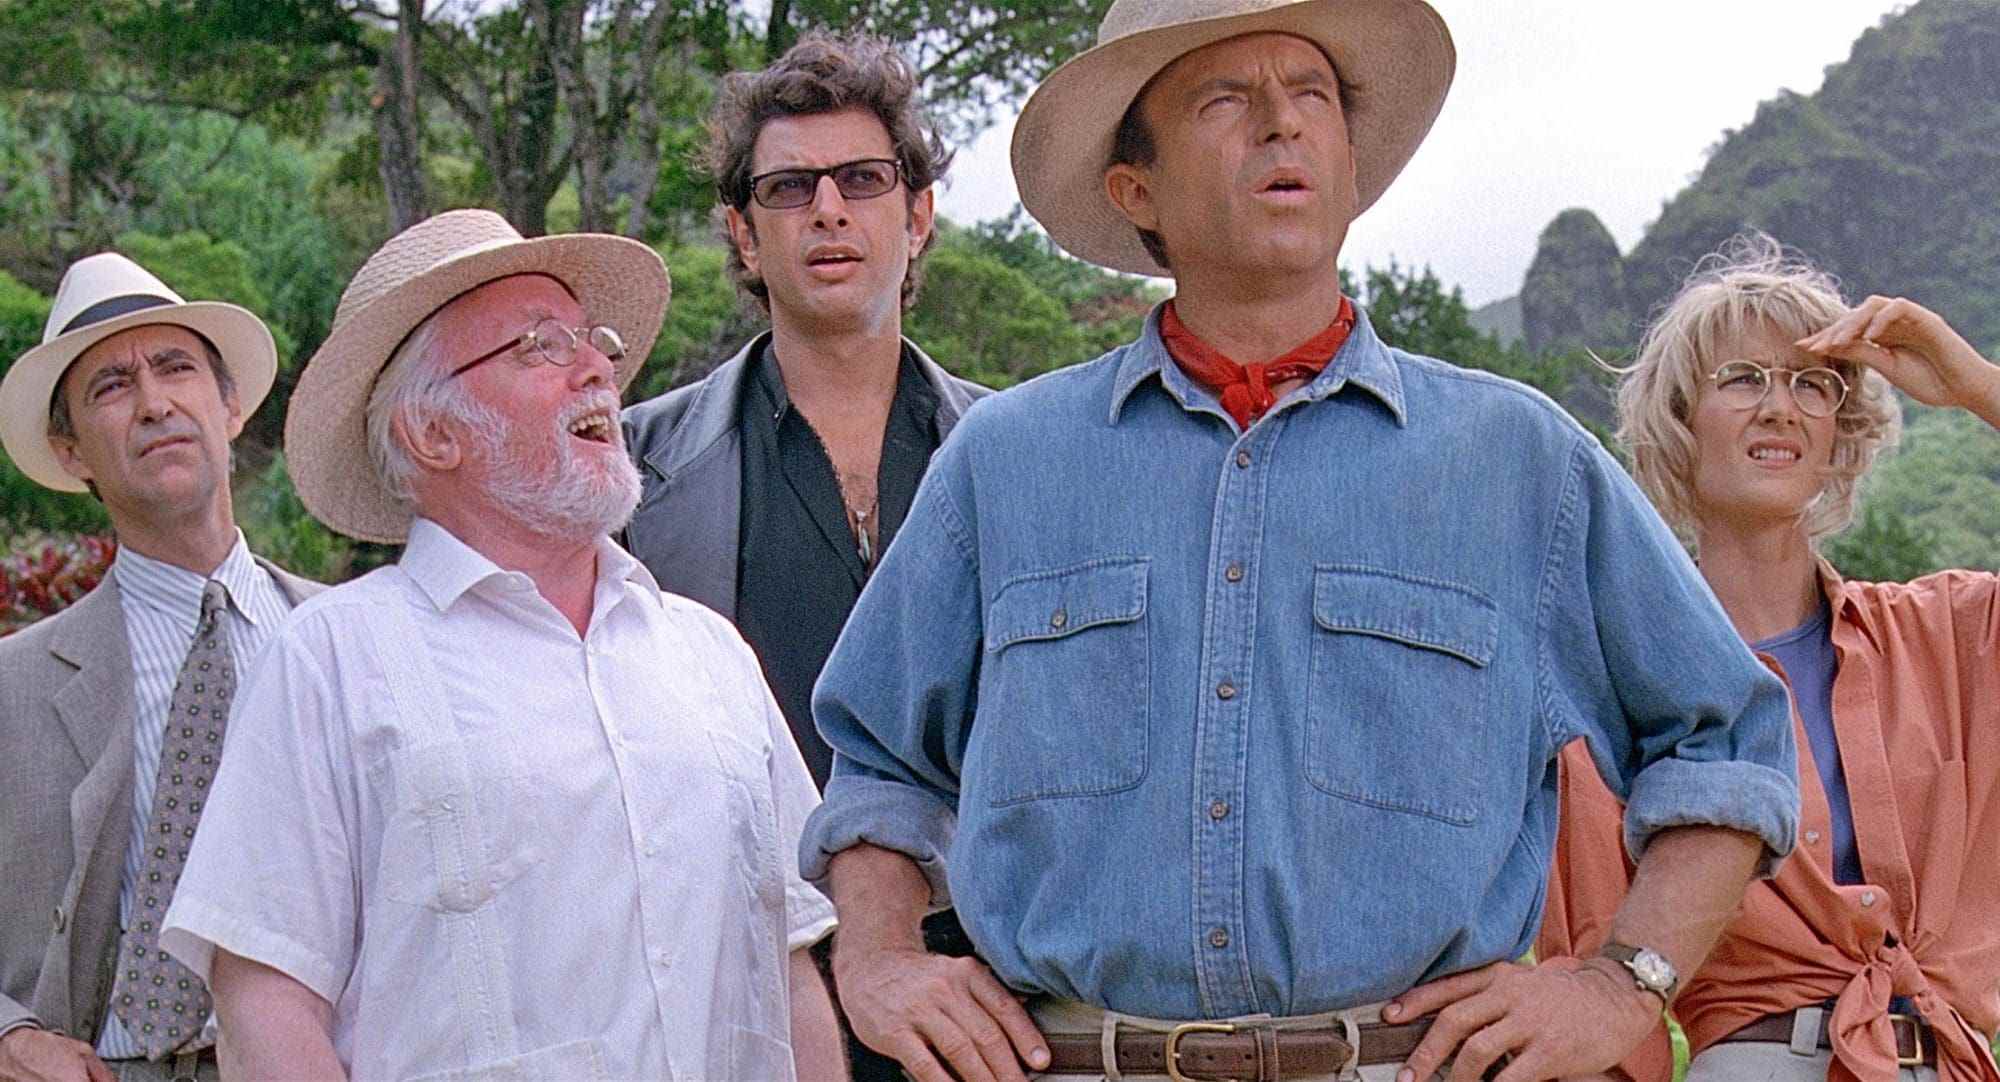 Le film de Steven Spielberg, Jurassic Park, parle de l'évolution de la paternité, de l'importance de la mère, de la question du rôle du père dans la parentalité des parents Grant Sattler Malcolm